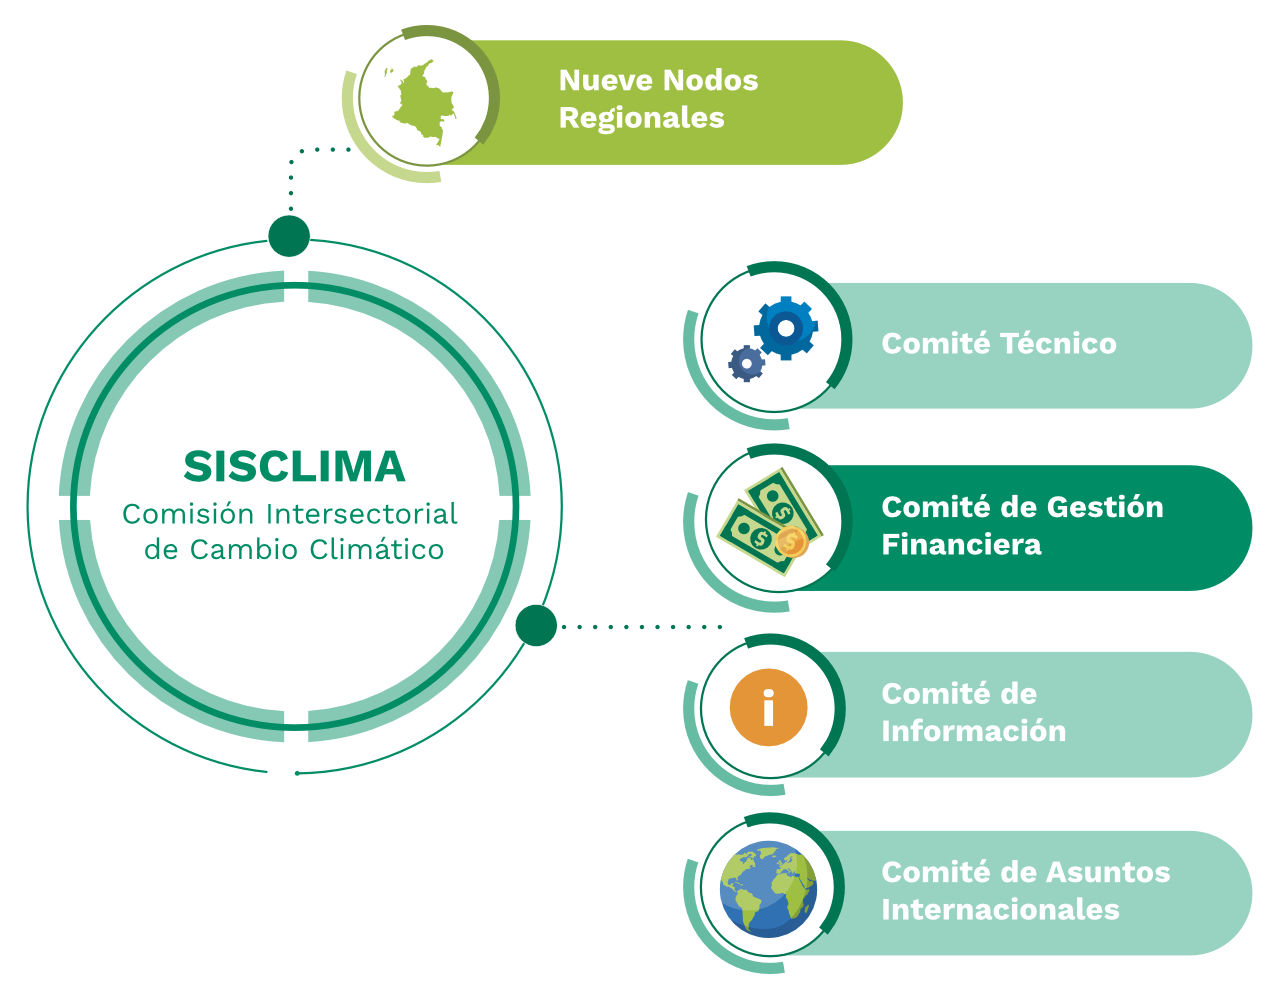 Comisión intersectorial de cambio Climático - SISCLIMA